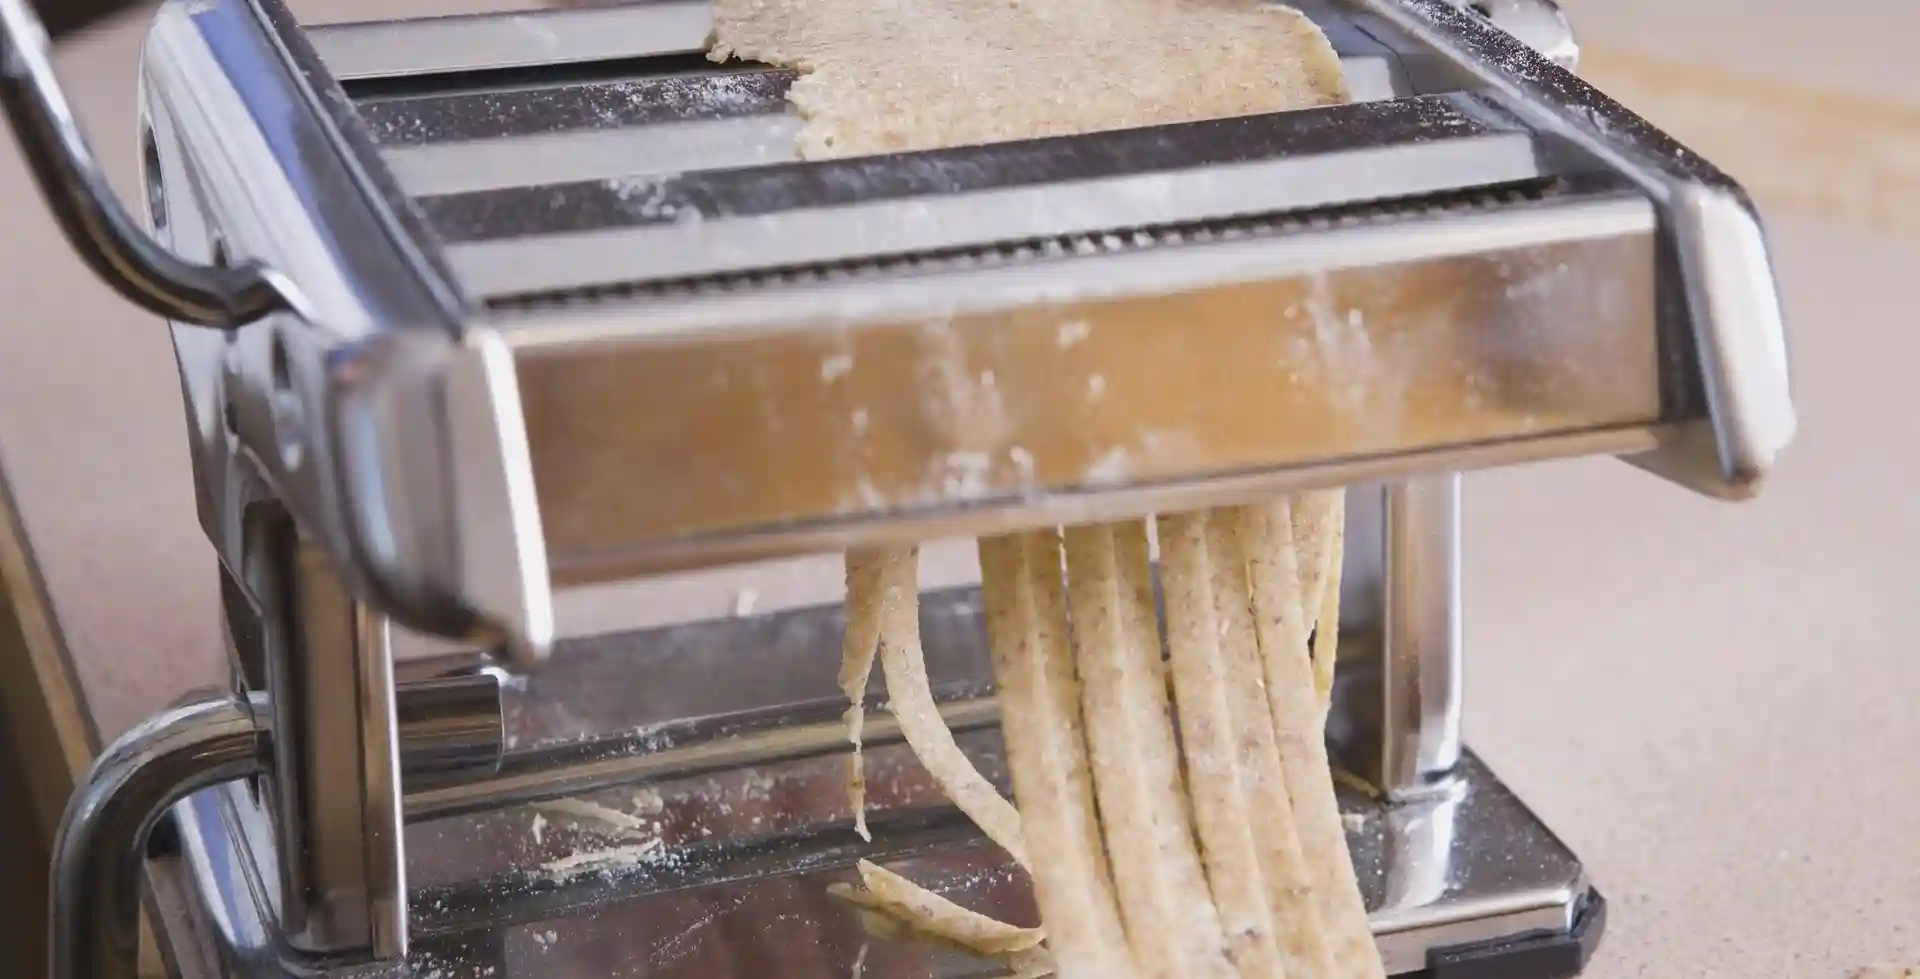 February 7, 2009 - Calgary, Alberta, Canada - Pasta Machine Making Pasta (Credit Image: © Michael Interisano/Design Pics via ZUMA Wire)